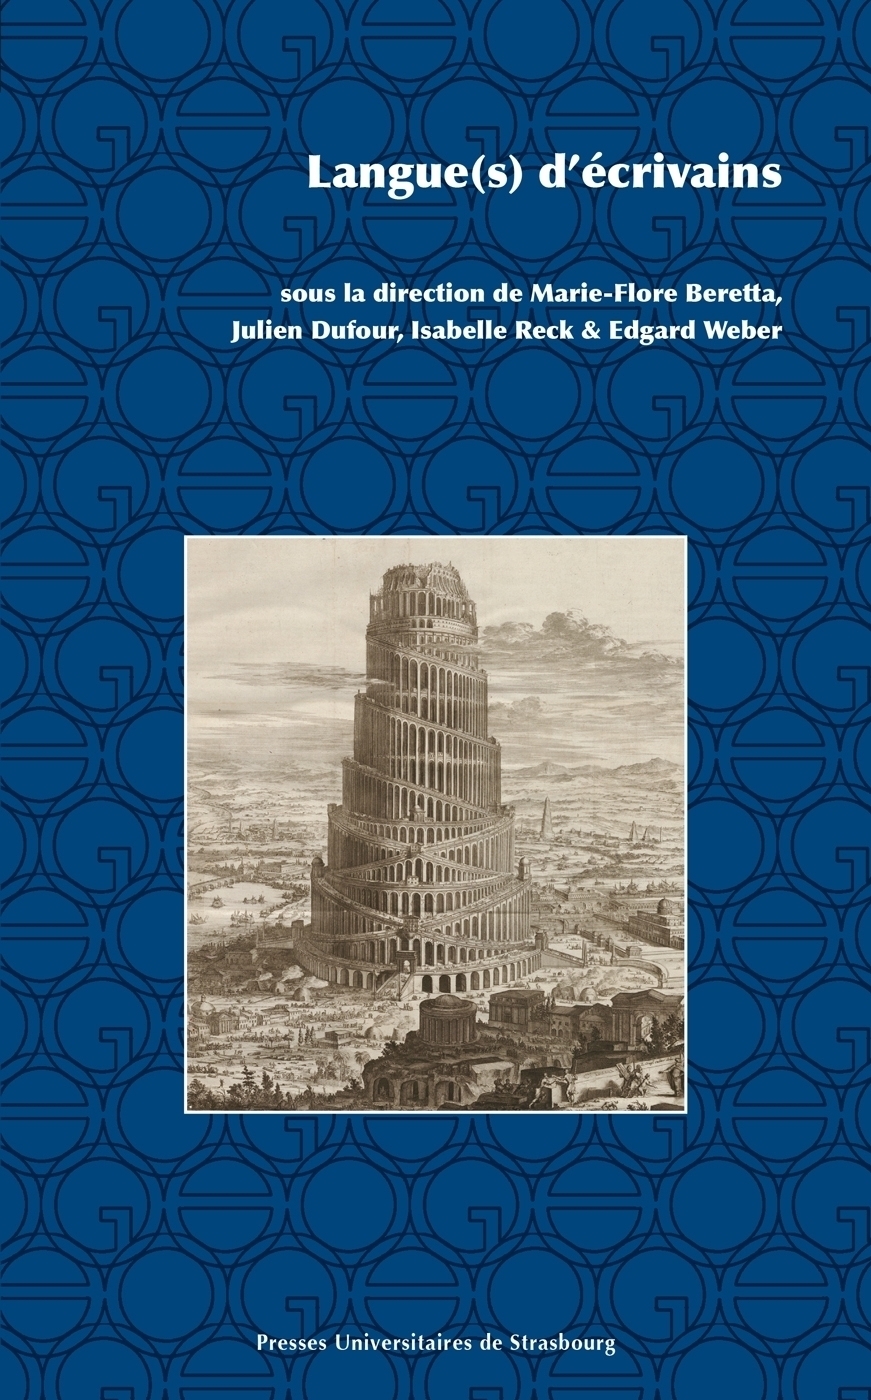 M.-F. Beretta, J. Dufour, I. Reck et E. Weber (dir.), Langue(s) d'écrivains